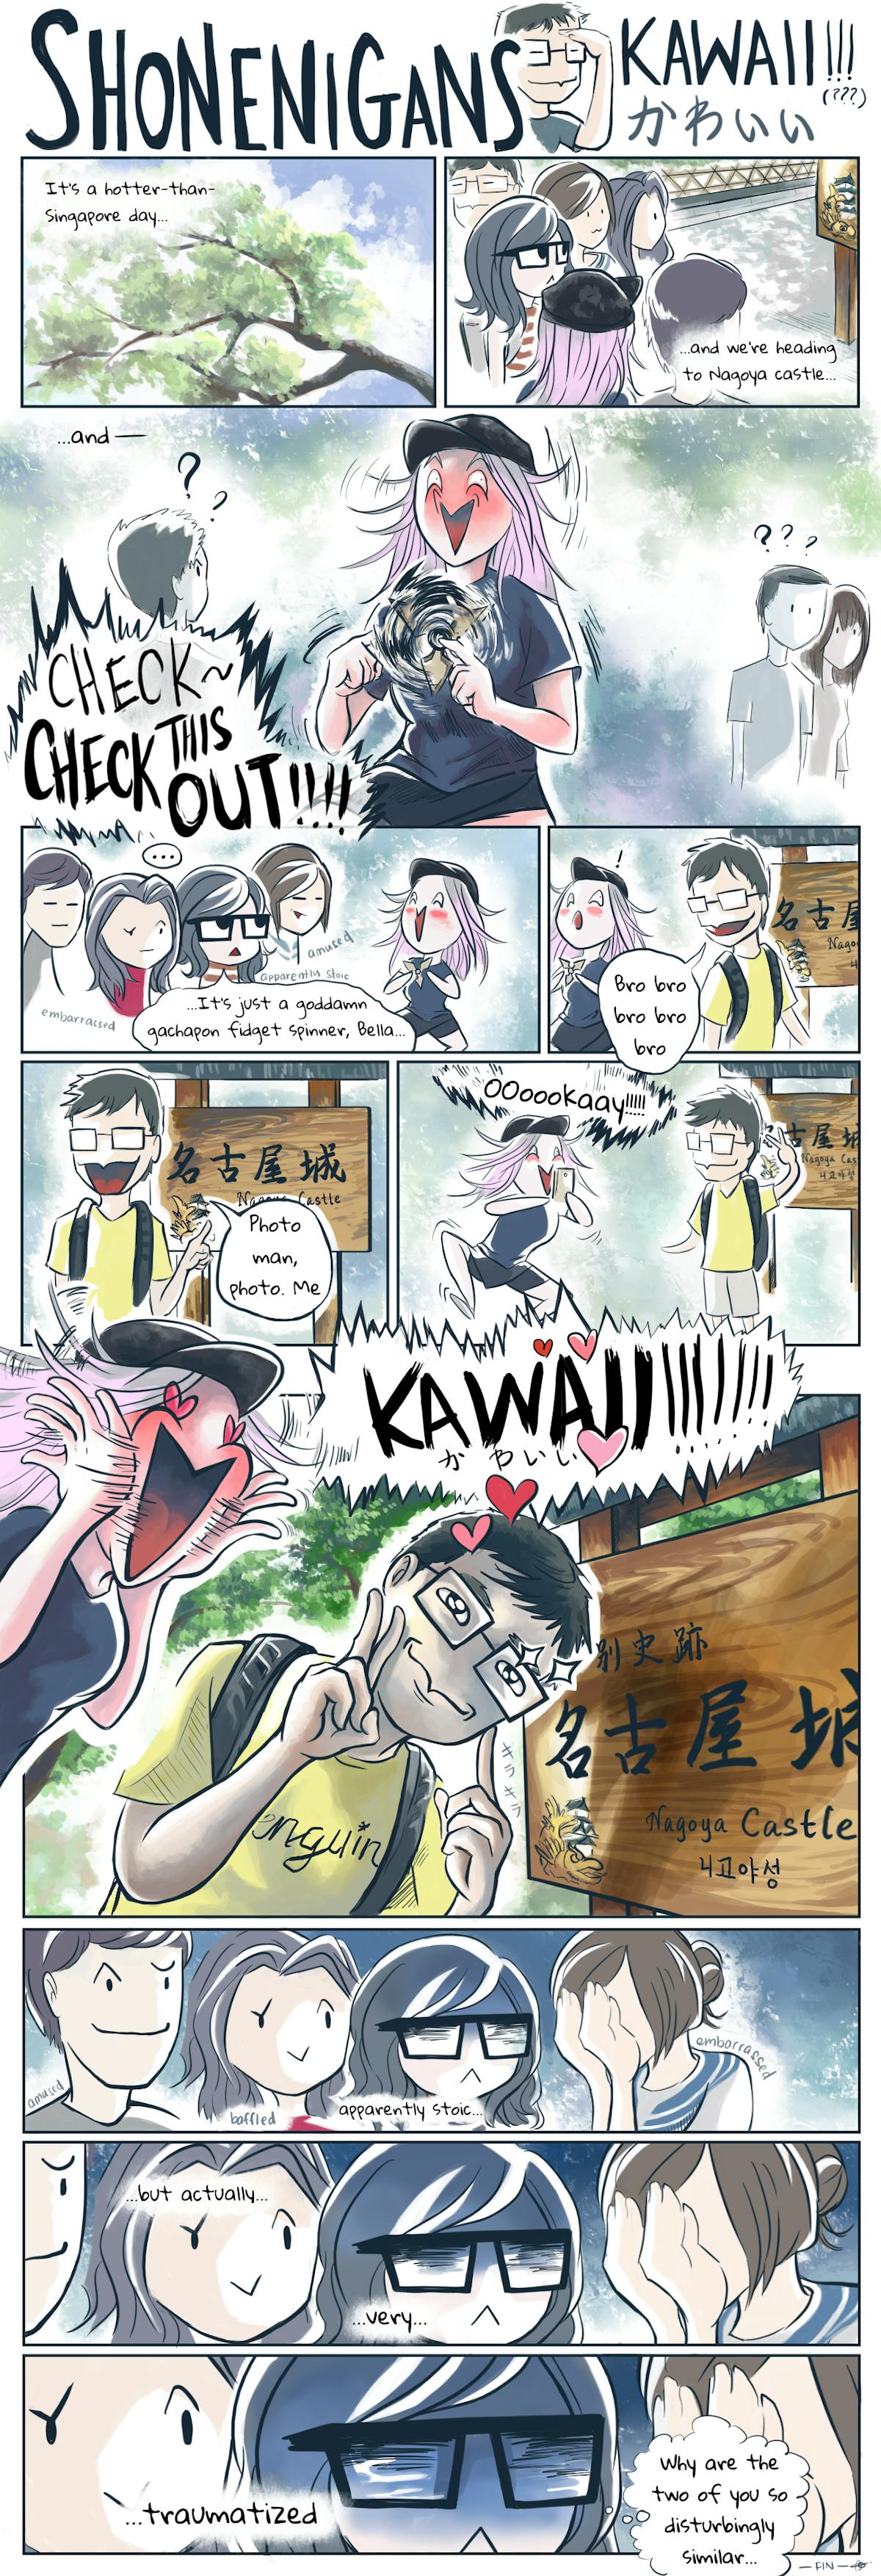 Shonenigans II: Kawaii!!!(???)